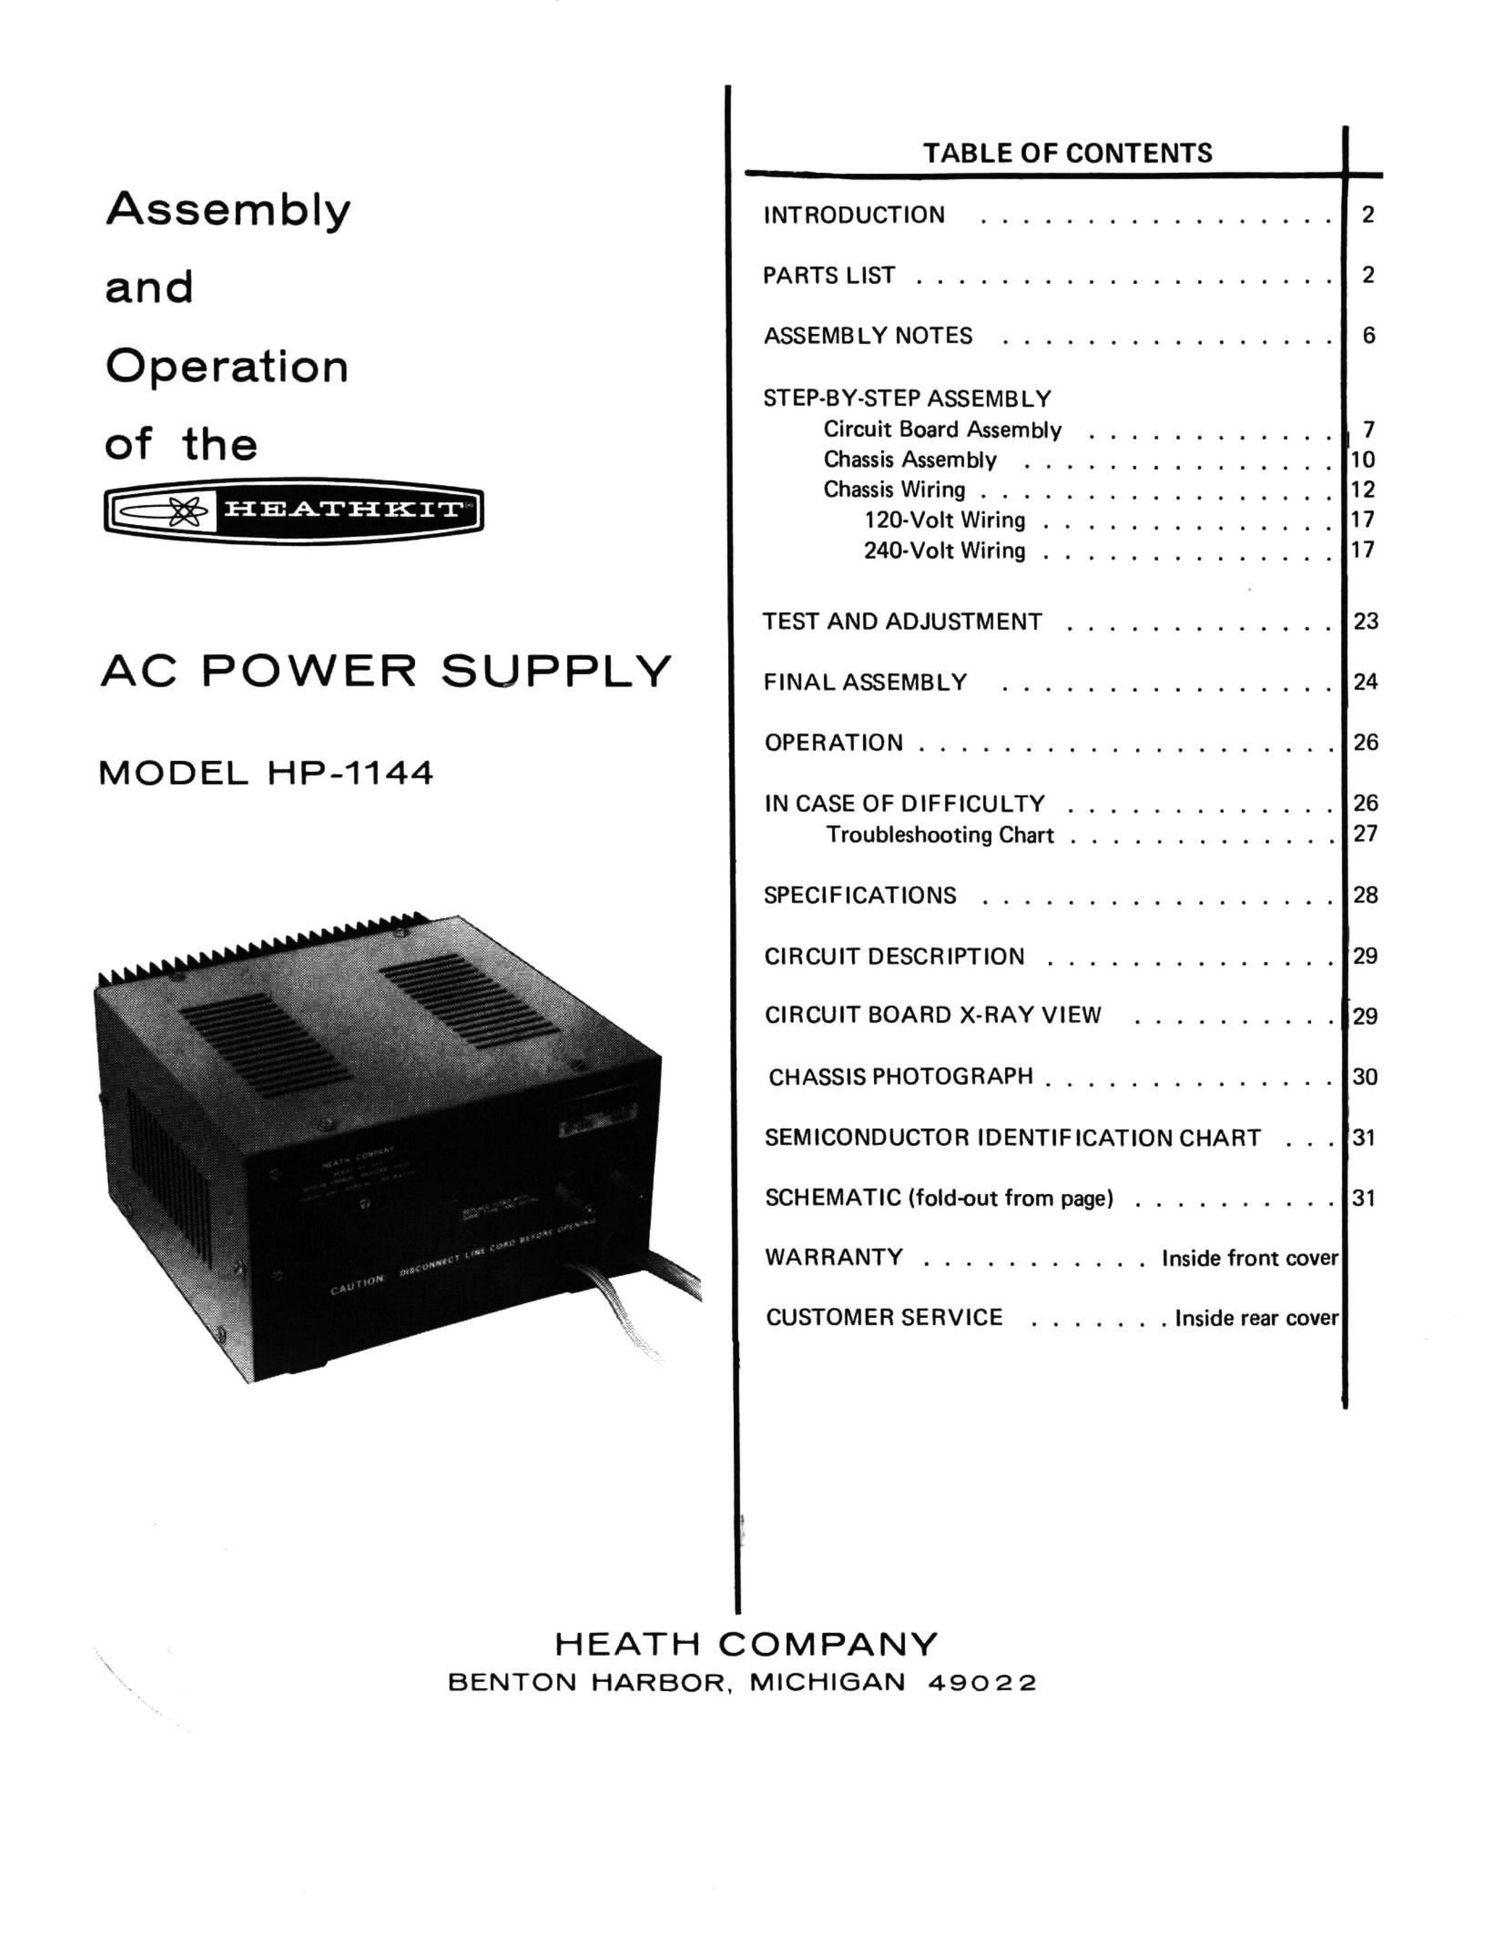 Heathkit HP 1144 Manual